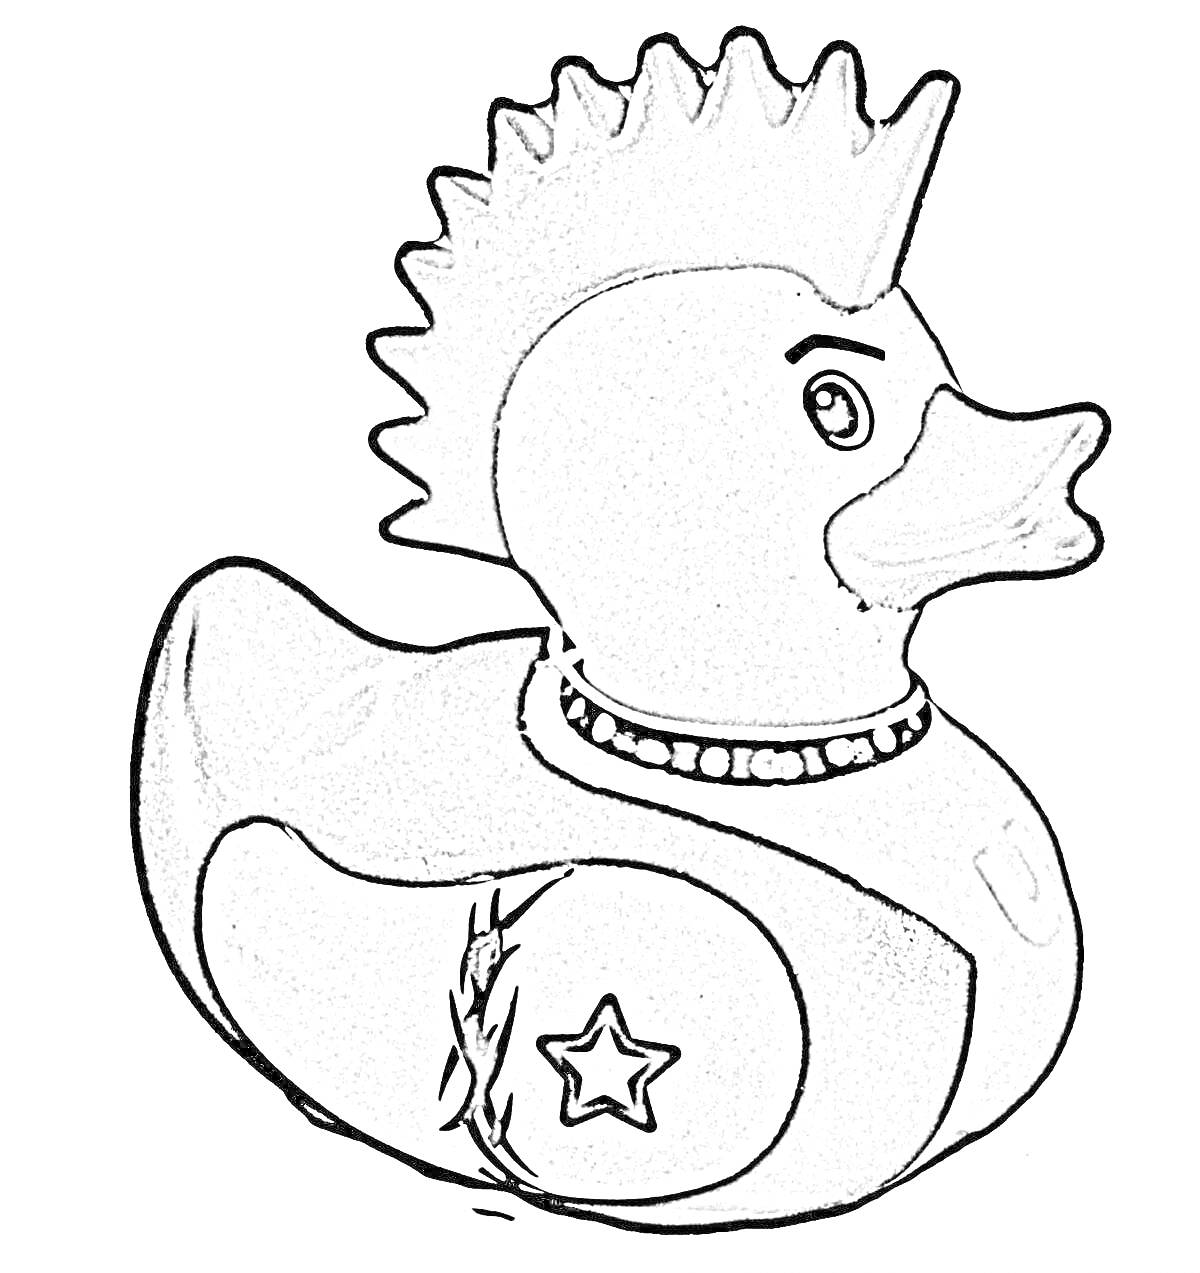 Раскраска Уточка дымковская игрушка с гребнем, звездой и ожерельем